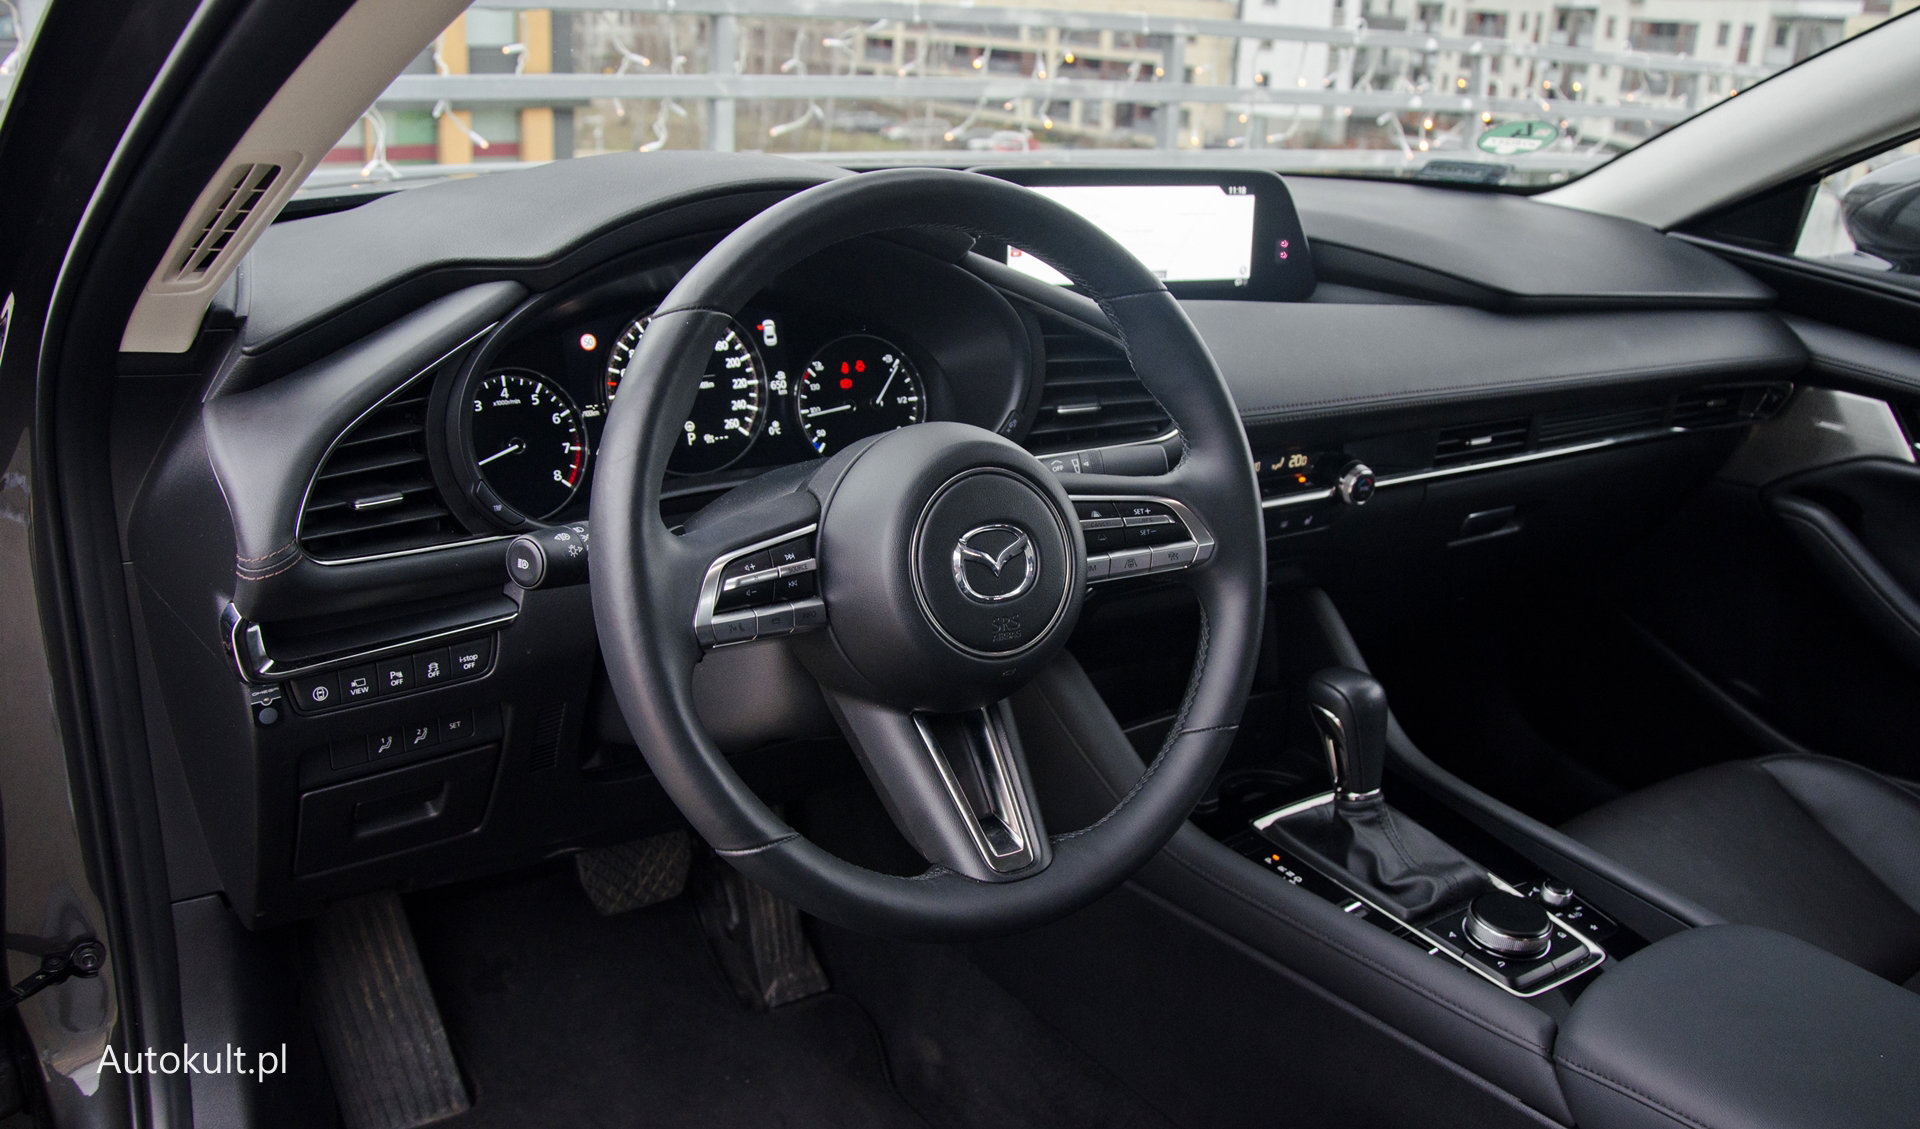 Mazda 3 2.0 Skyactiv-G (122 Km) - Test, Opinia, Zużycie Paliwa | Autokult.pl